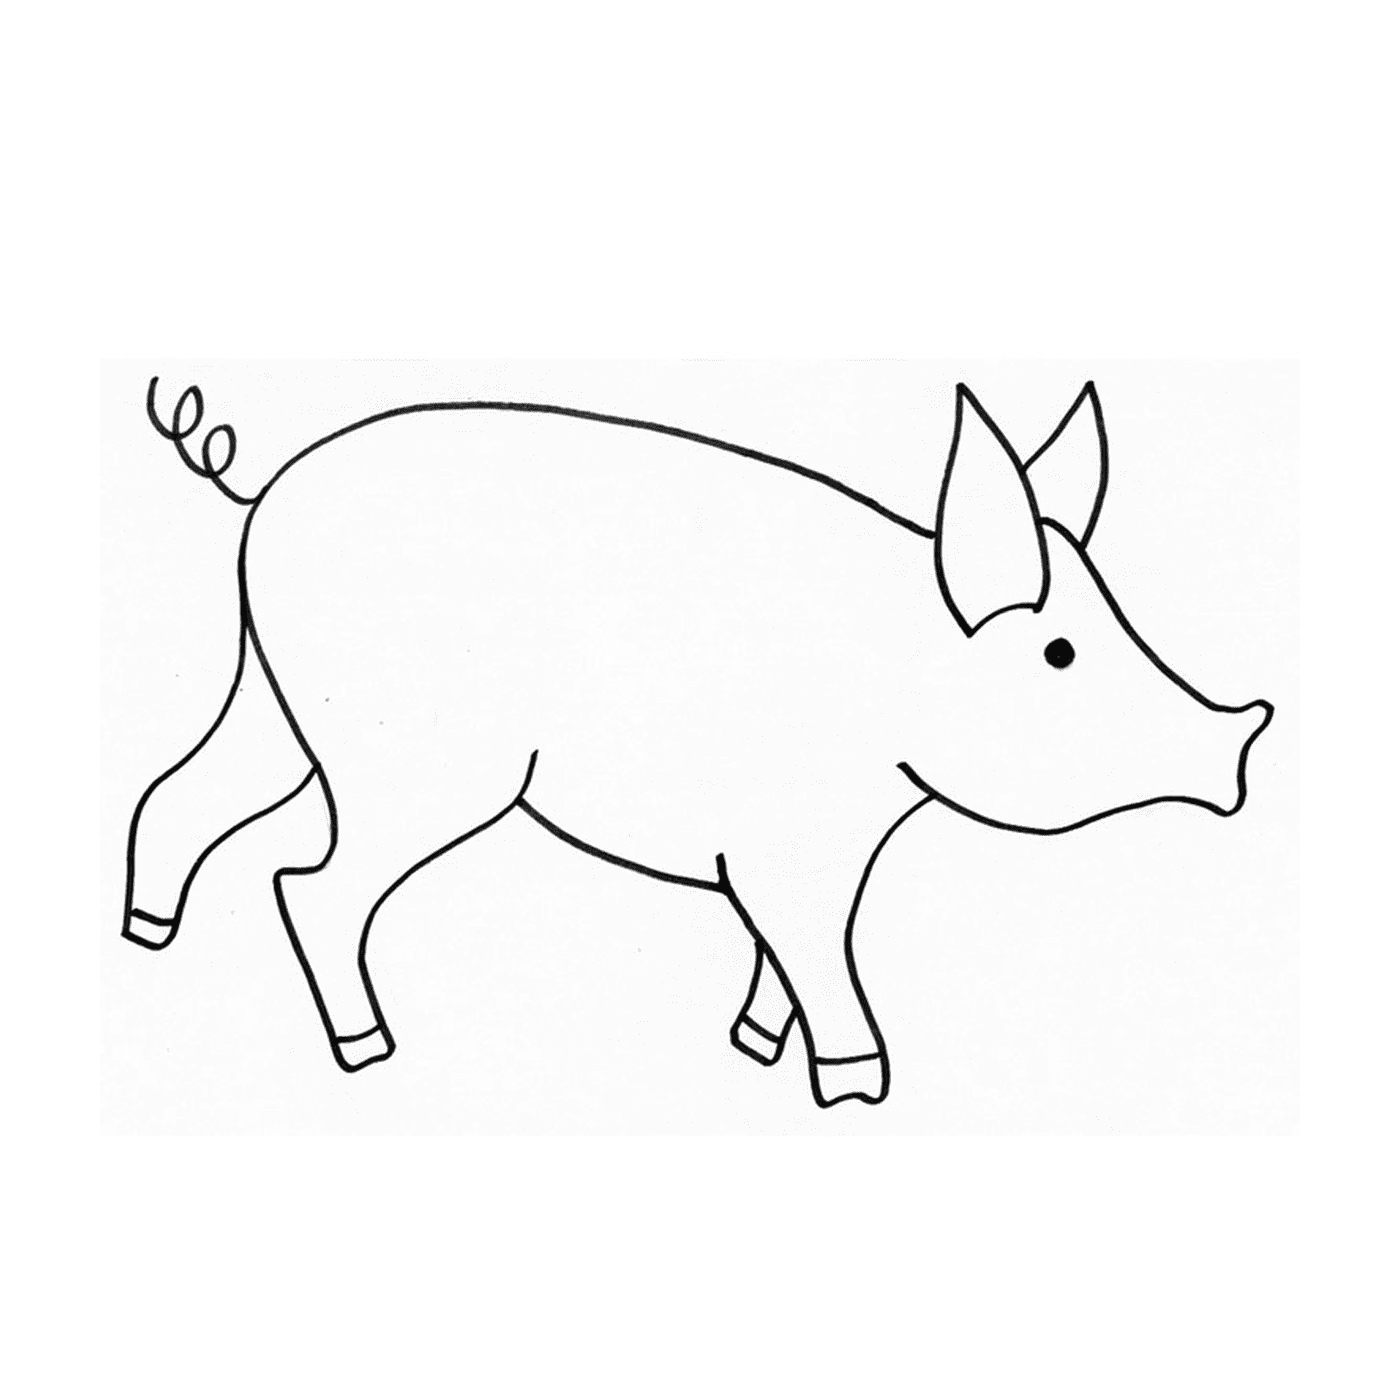  Um porco anão em um estilo de desenho 